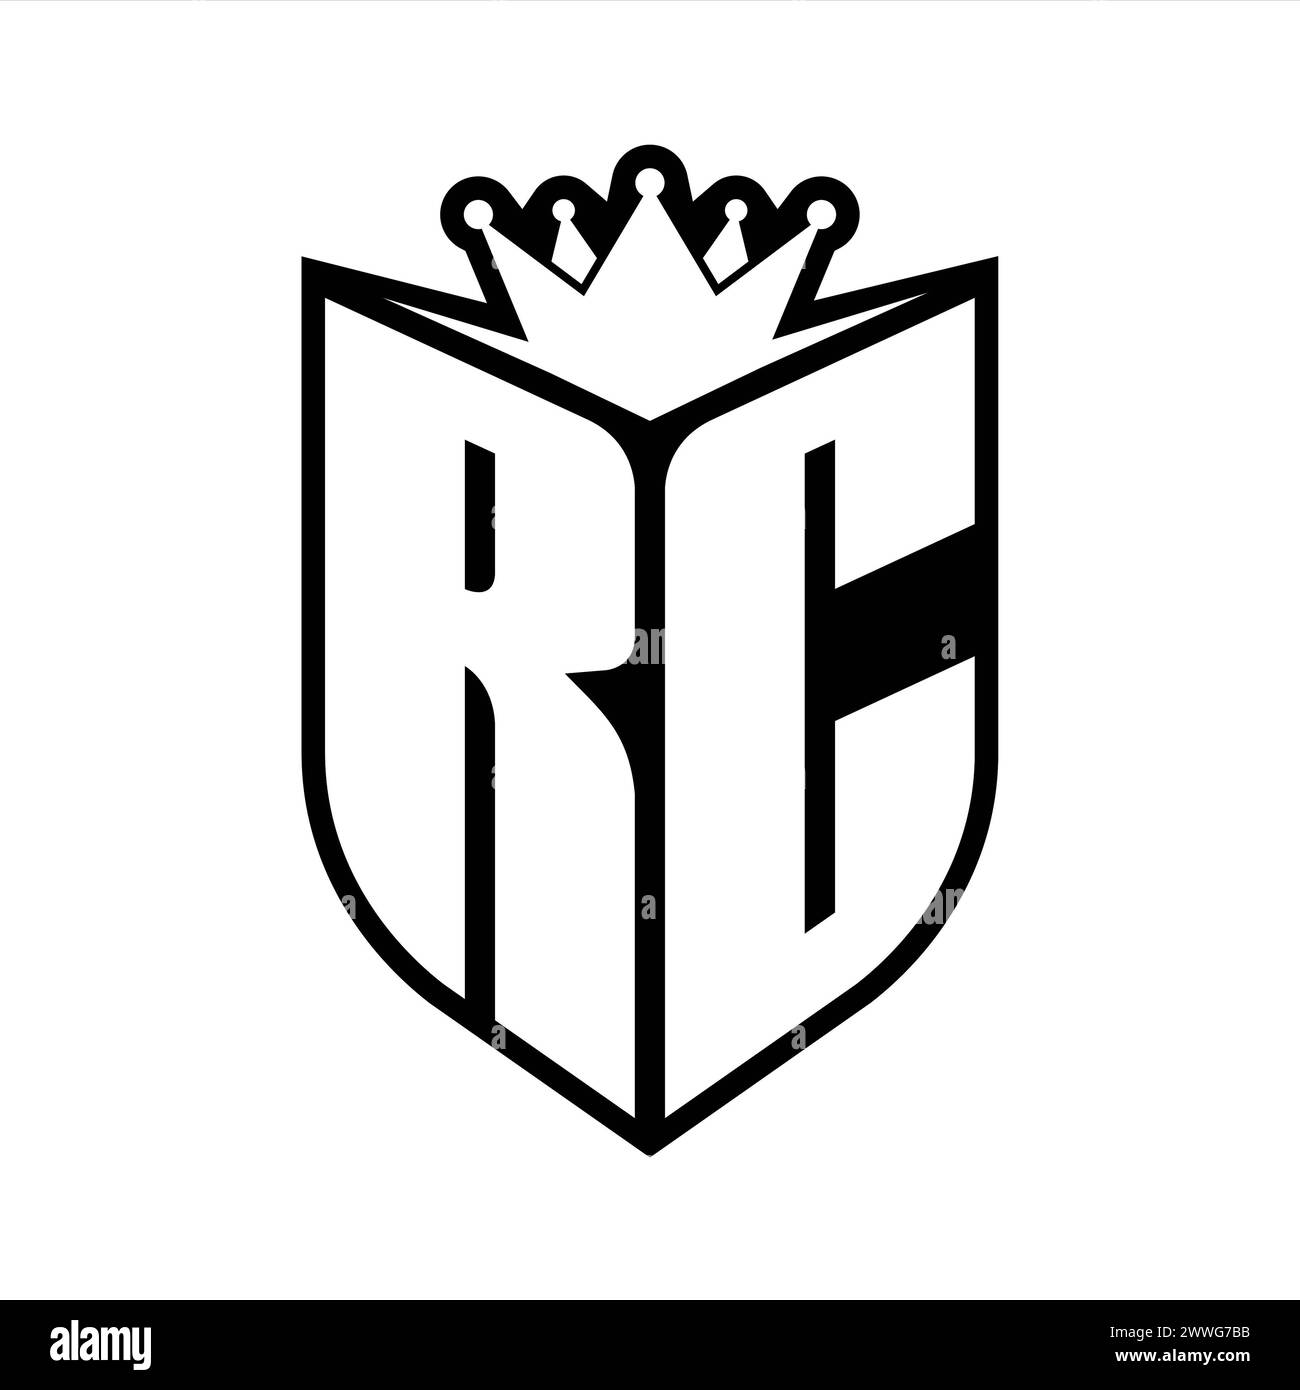 Auffälliges Monogramm mit RC Letter und scharfer Krone im Schild in Schwarz-weiß-Farbe Stockfoto